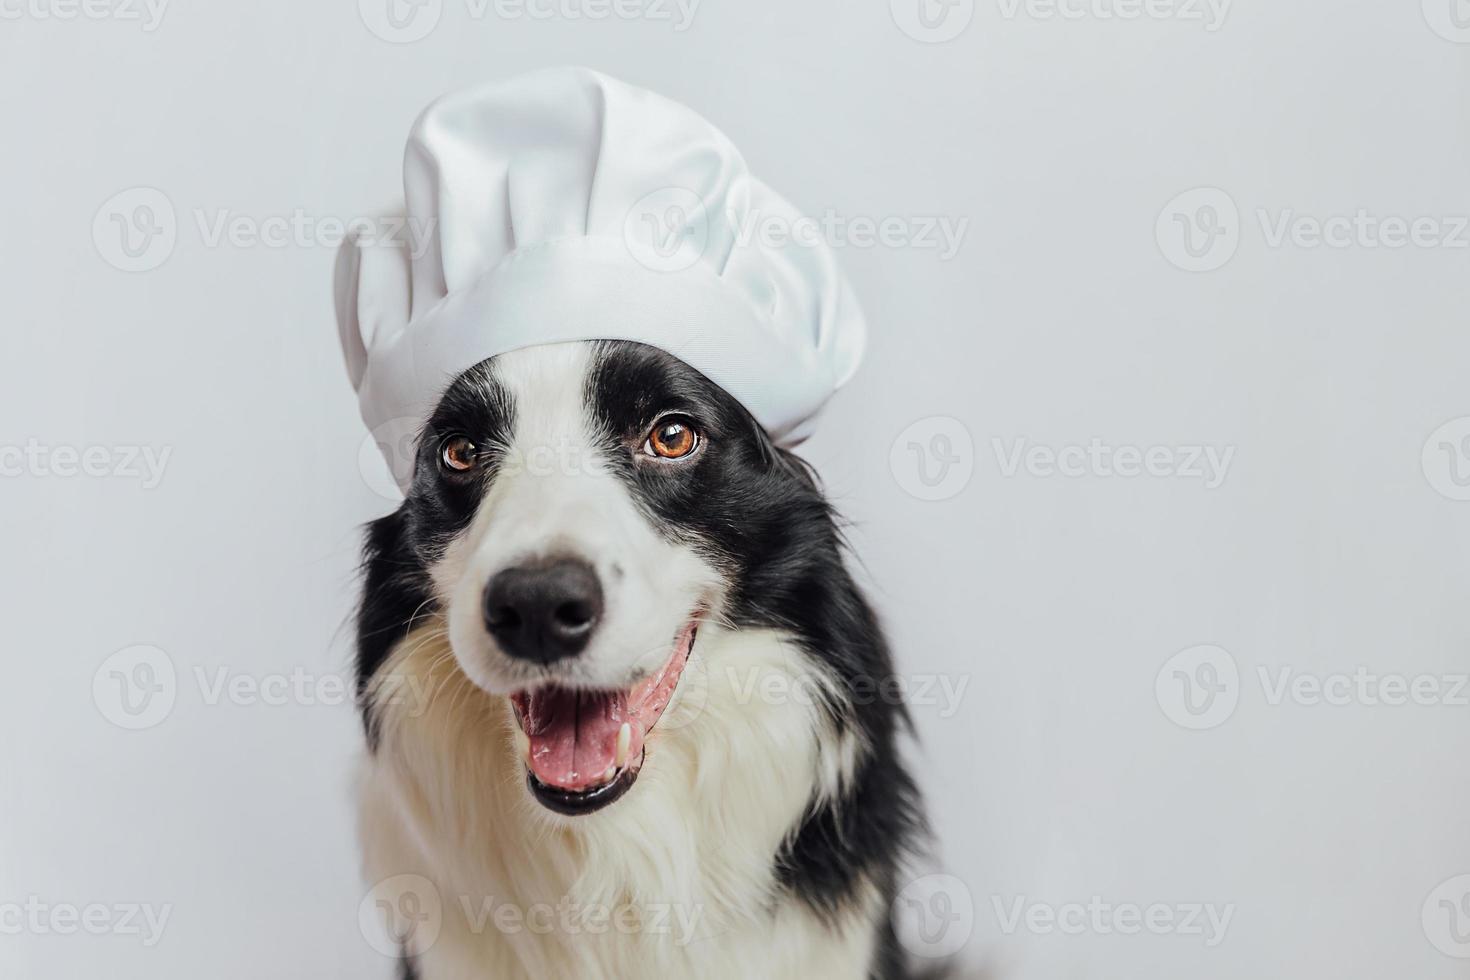 divertente cucciolo di cane border collie in chef cappello da cucina isolato su sfondo bianco. chef cane che cucina la cena. concetto di menu del ristorante di cibo fatto in casa. processo di cottura. foto